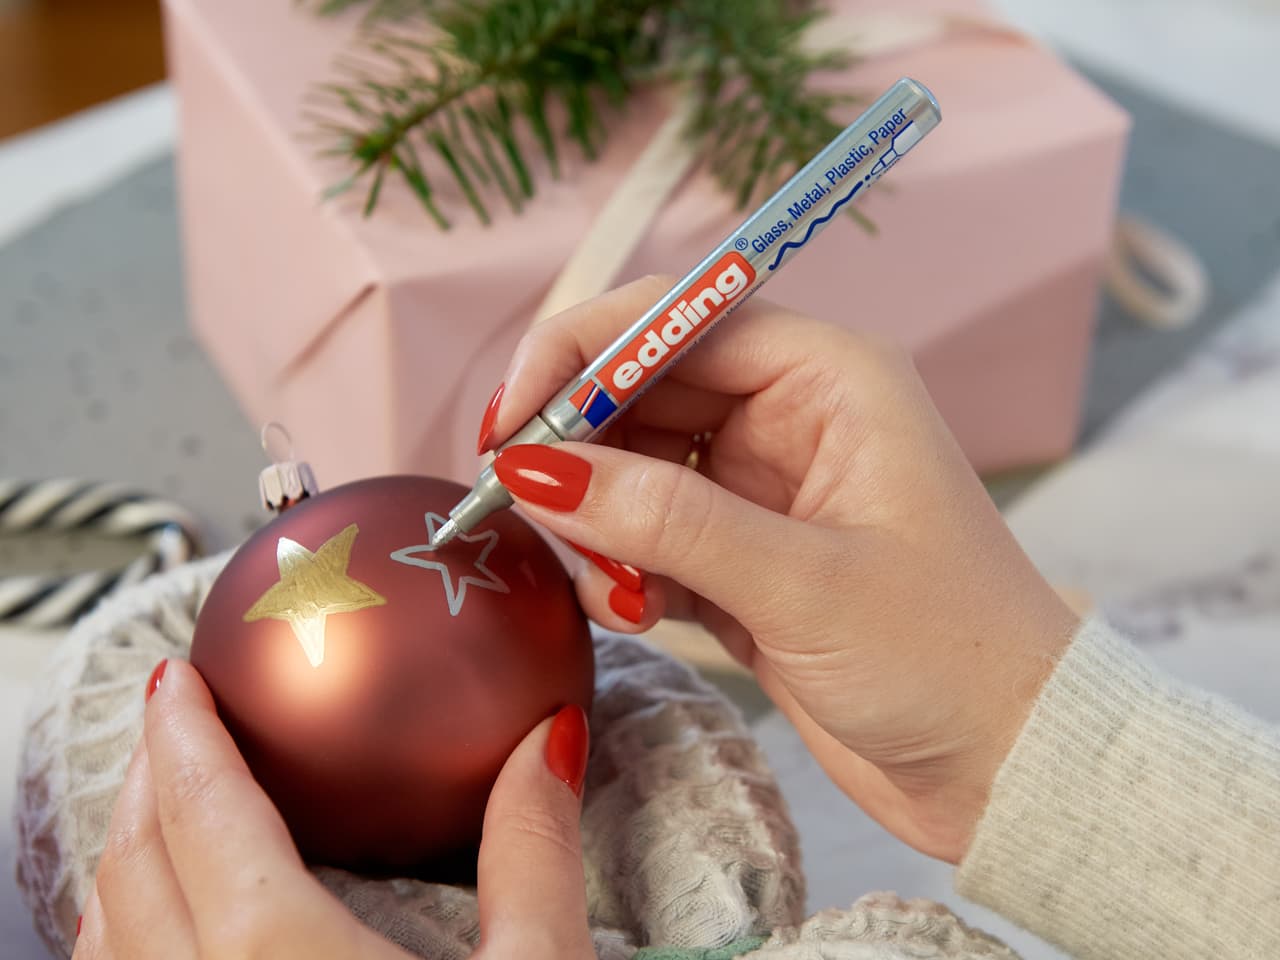 Hände dekorieren mit einem Glanz-Lackmarker edding 751 zart eine rote Weihnachtskugel mit einem silbernen Stern, im Hintergrund Weihnachtsgeschenke und Grünpflanzen.